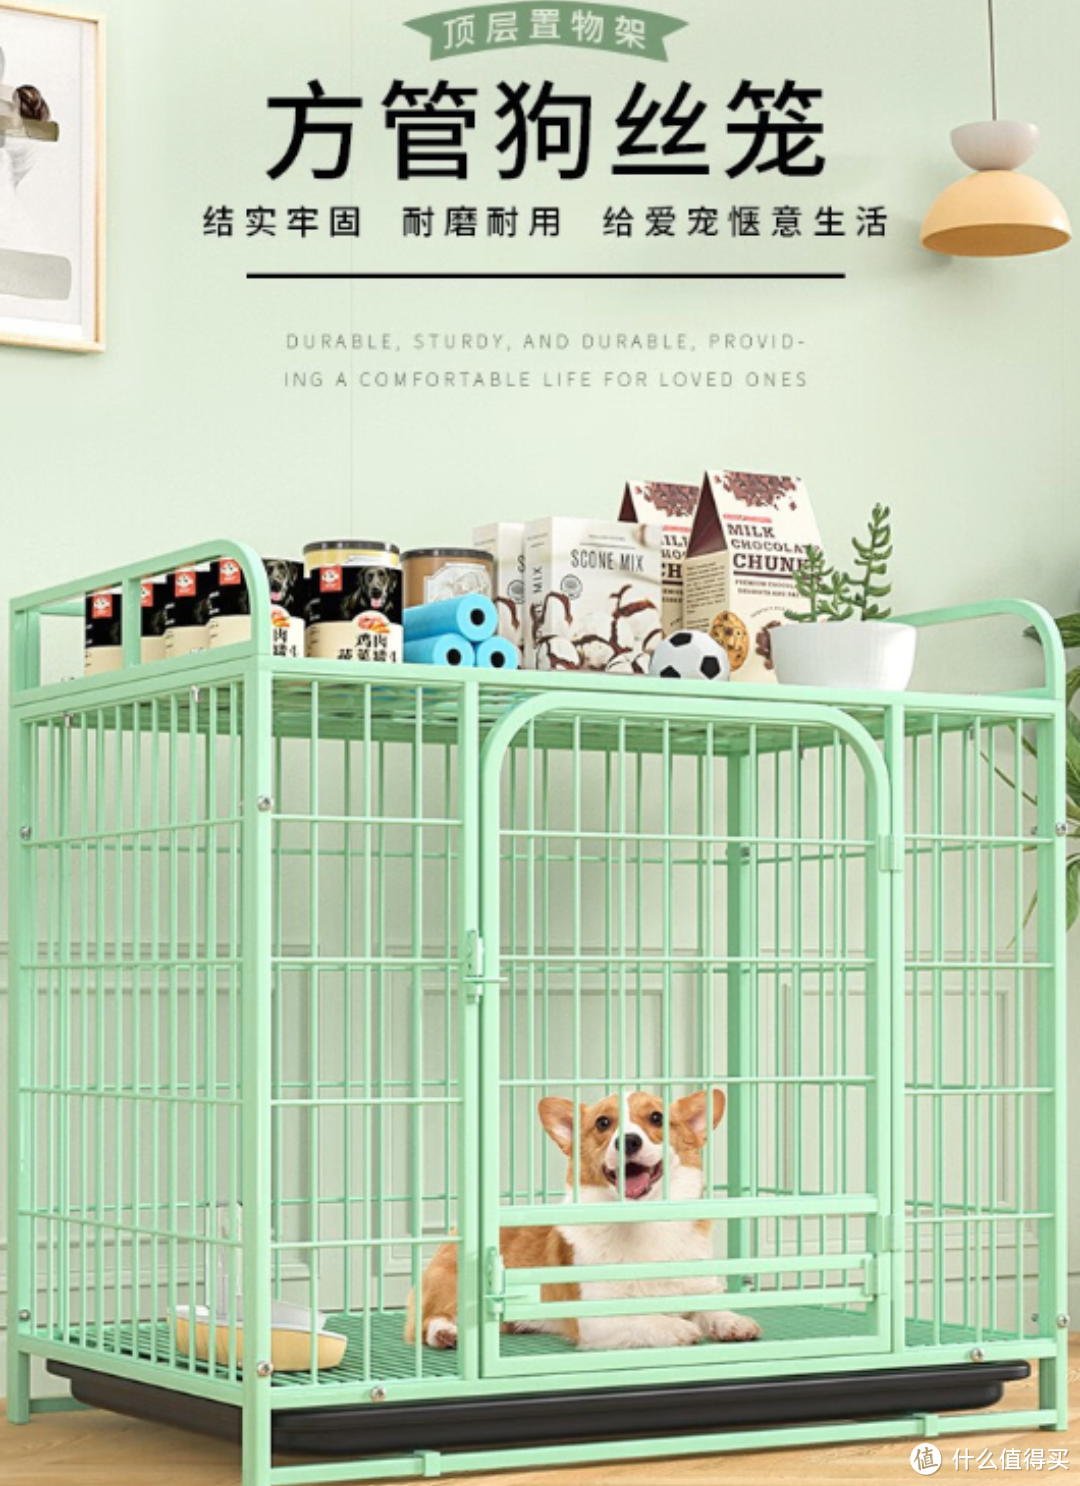 憨憨宠 狗笼，为你的爱犬打造一个舒适安全的居住空间！